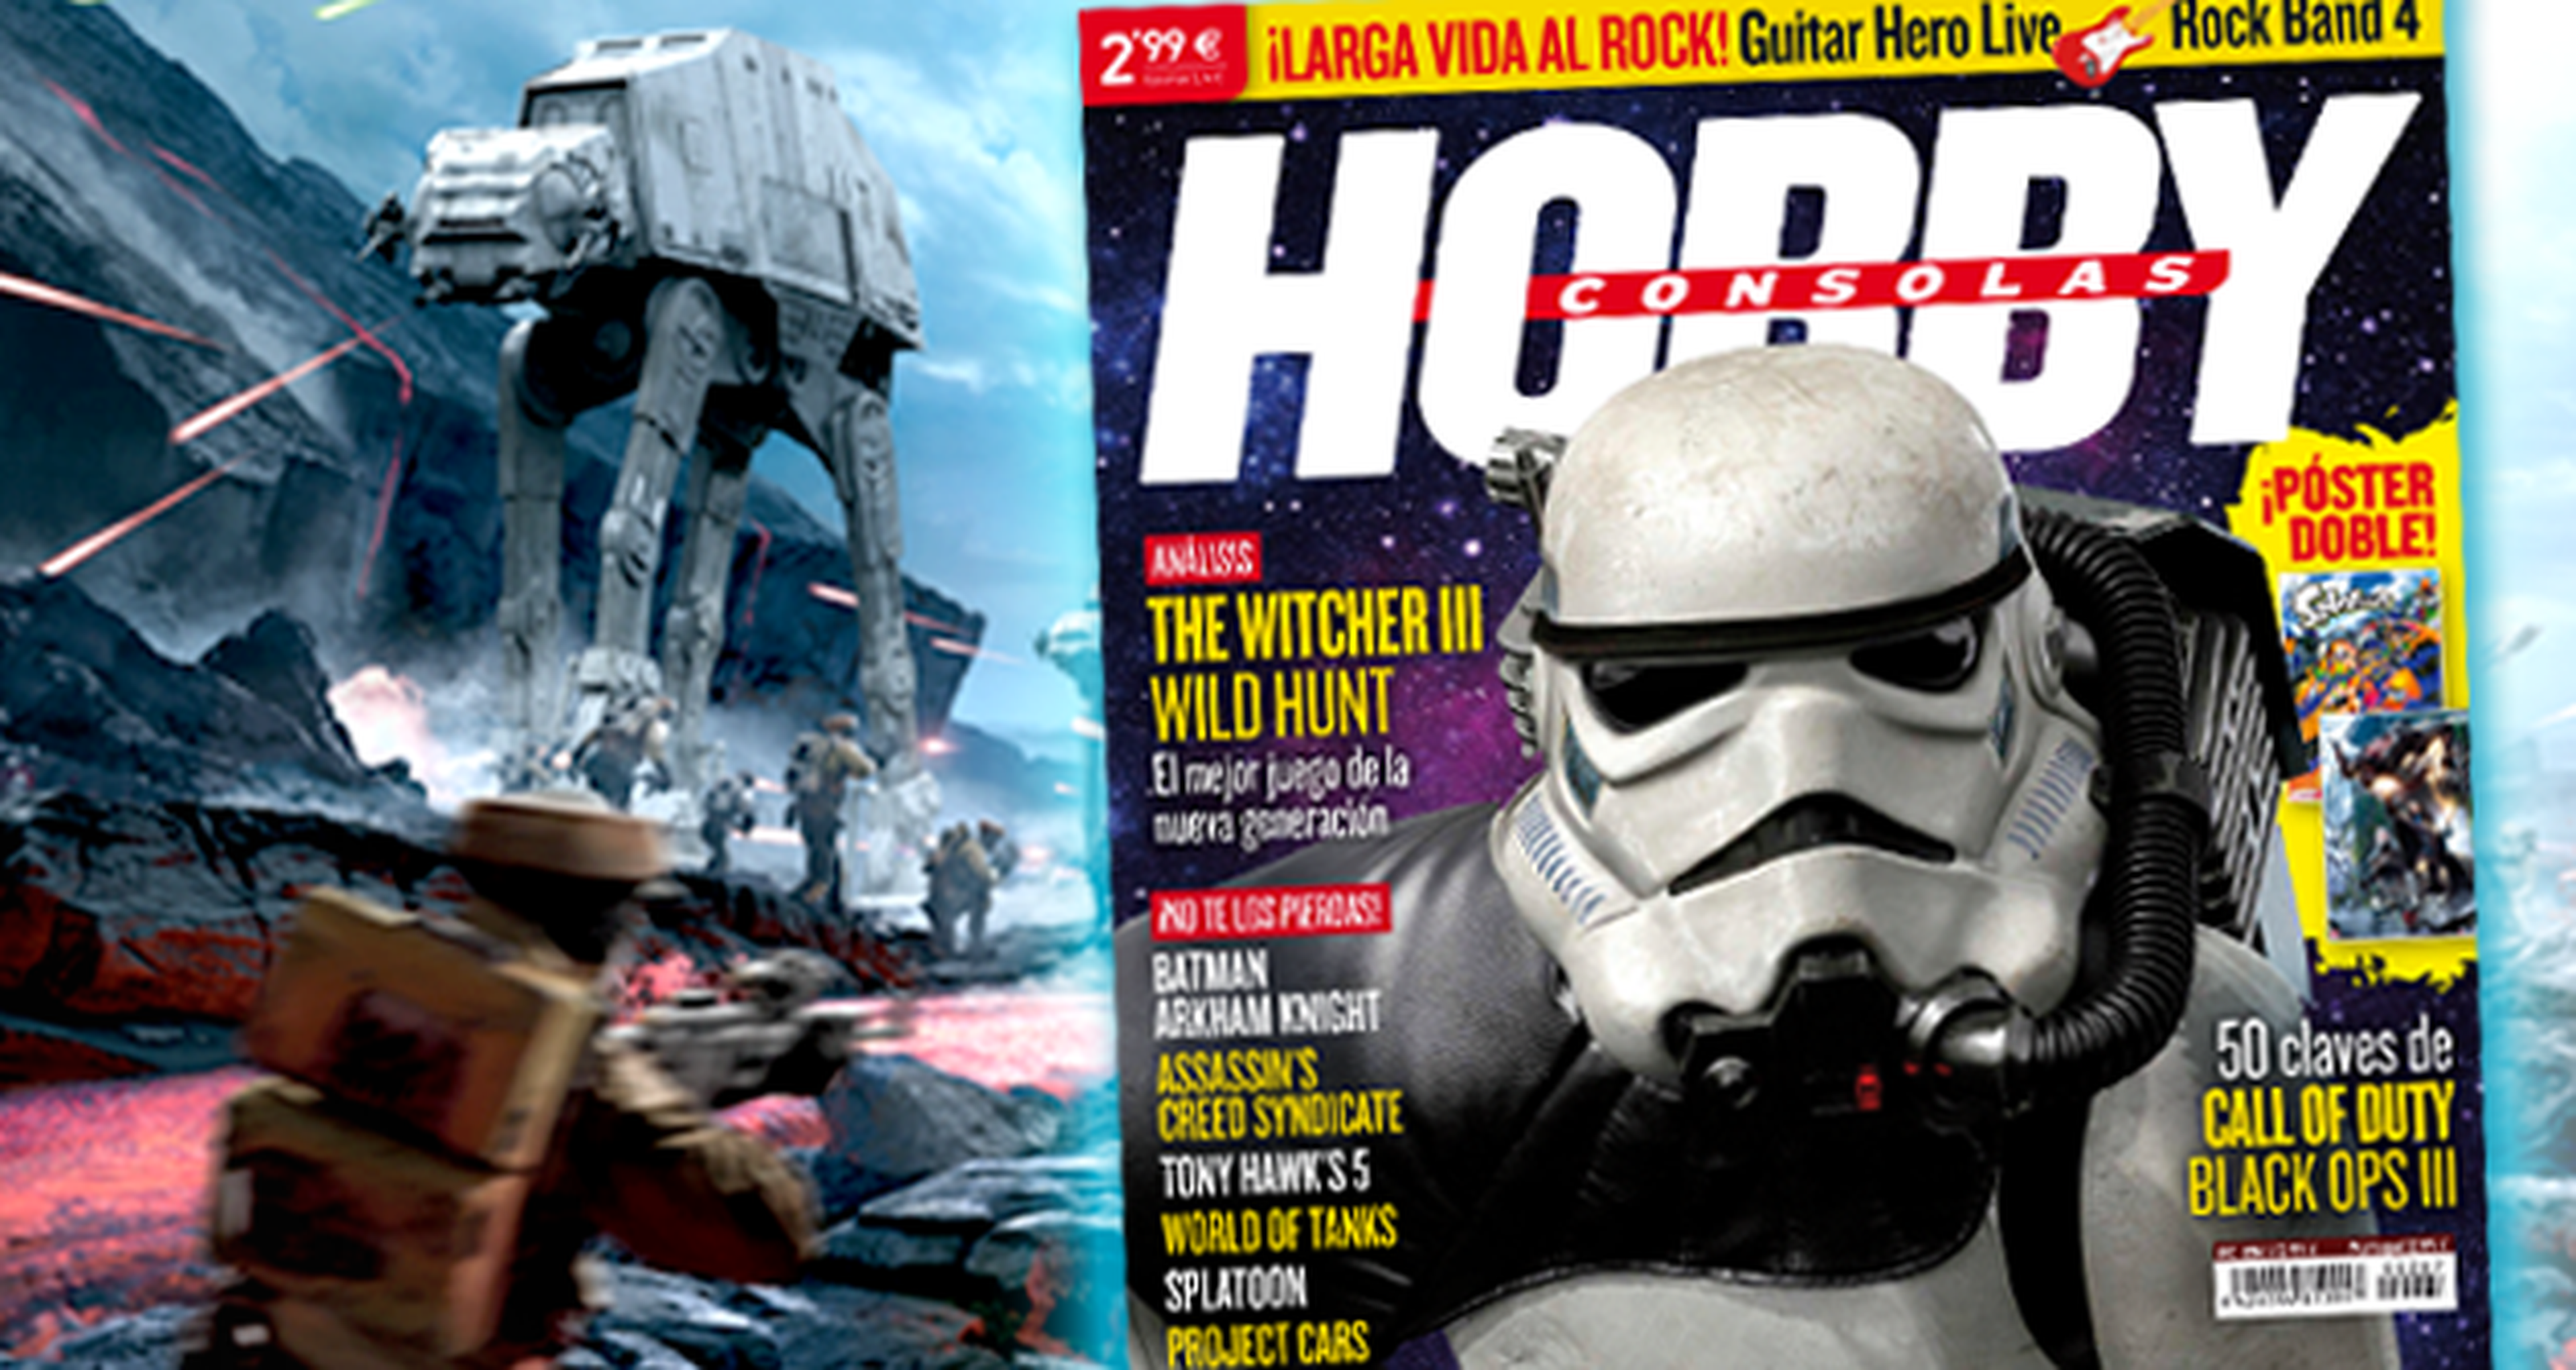 ¡Star Wars Battlefront es la portada del próximo número de Hobby Consolas!